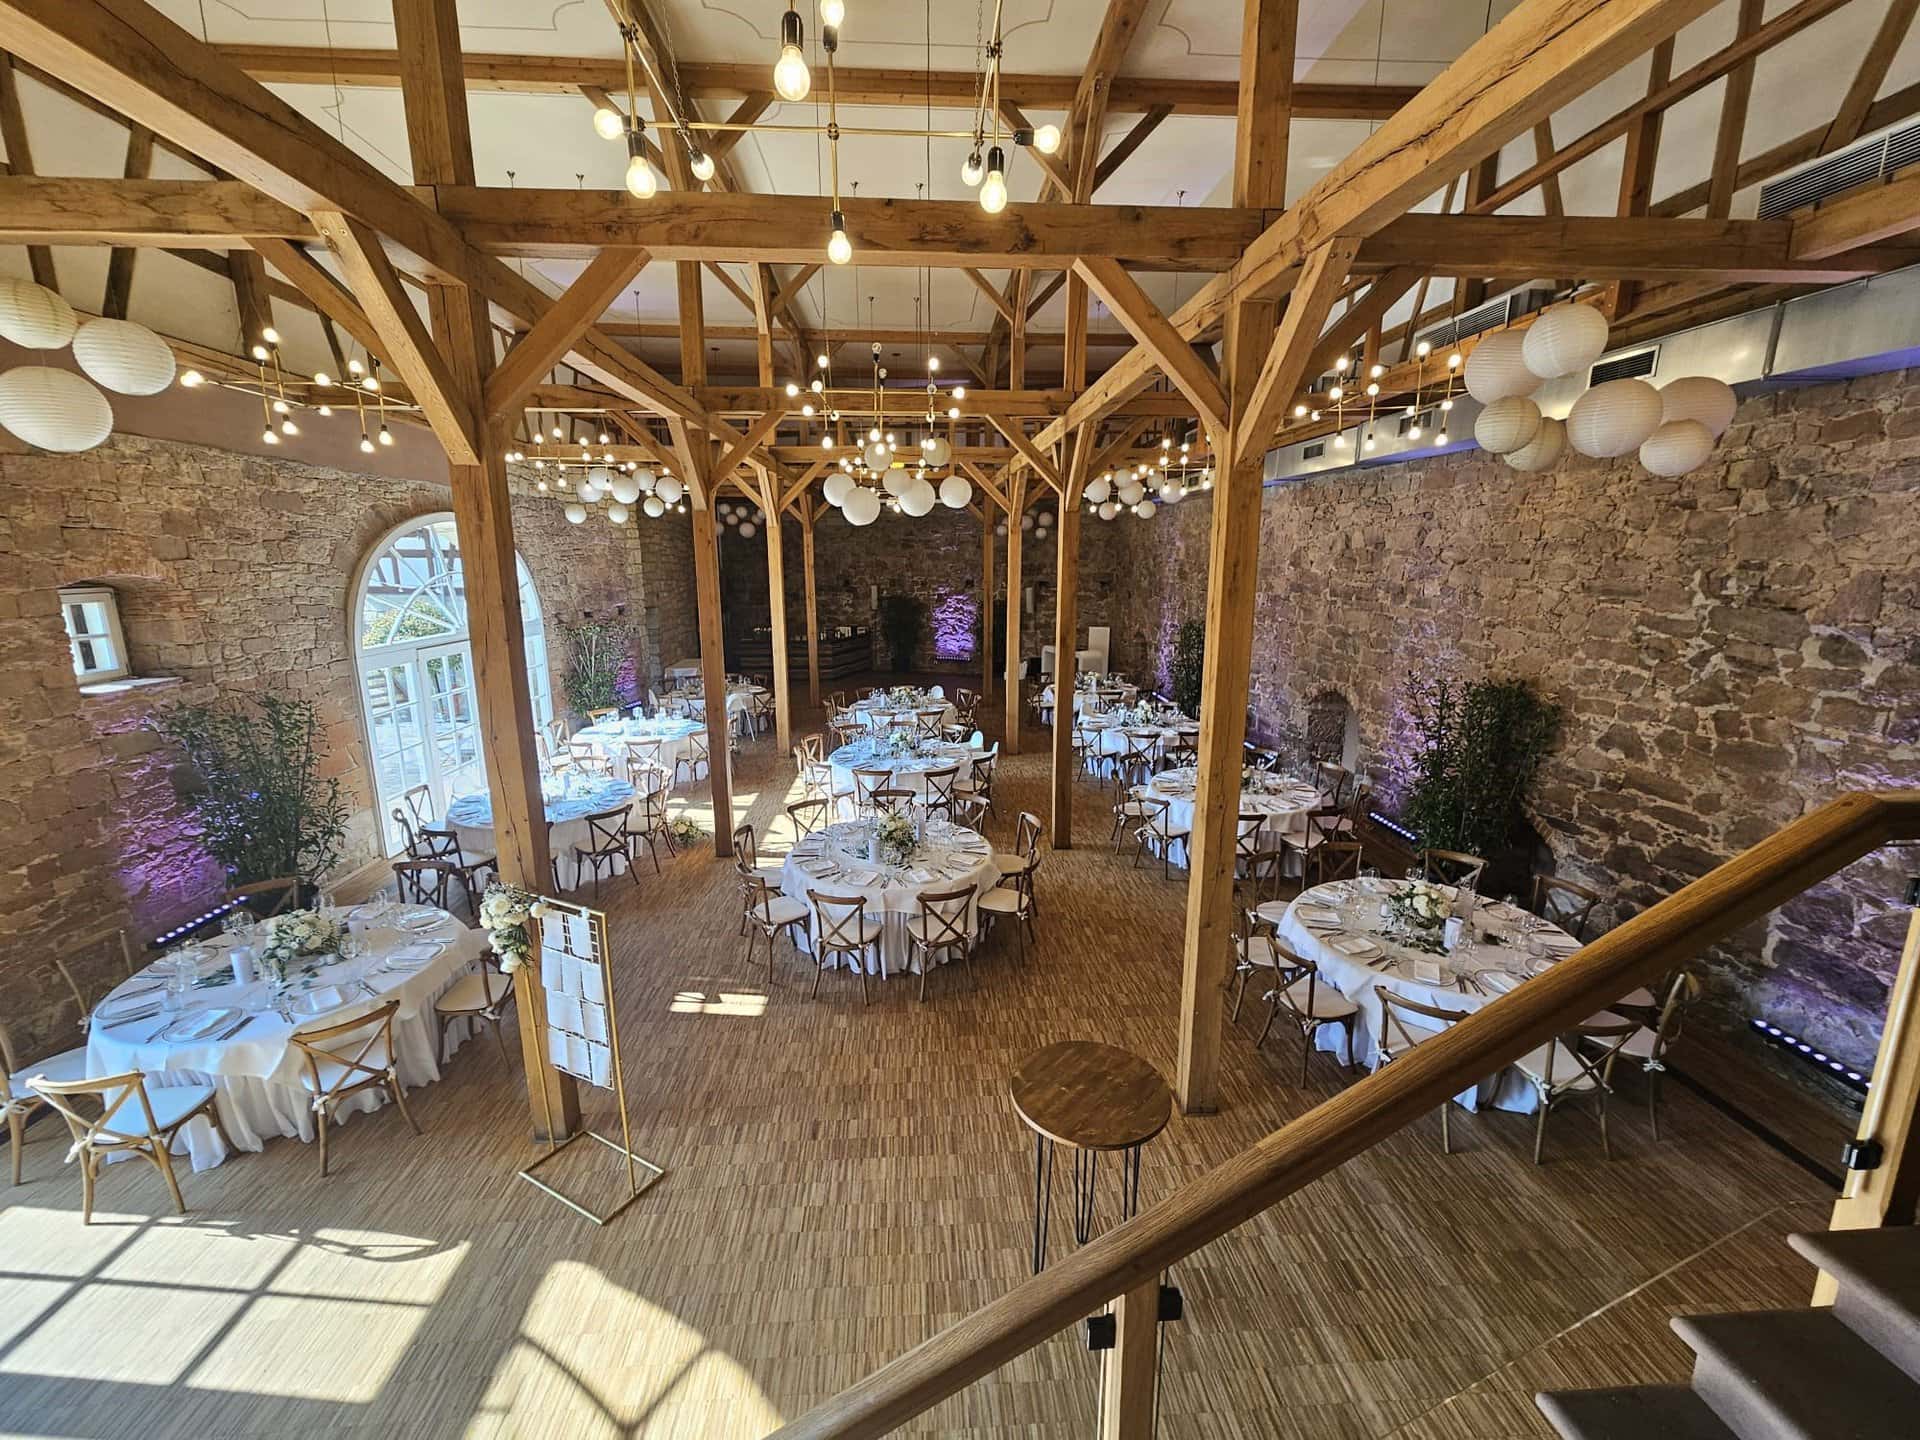 Innenansicht eines rustikalen Hochzeitslokals im Landgut Schloss Michelfeld mit Holzbalken, Steinwänden und runden Tischen für einen Empfang, beleuchtet mit Tageslicht und Hängelampen.